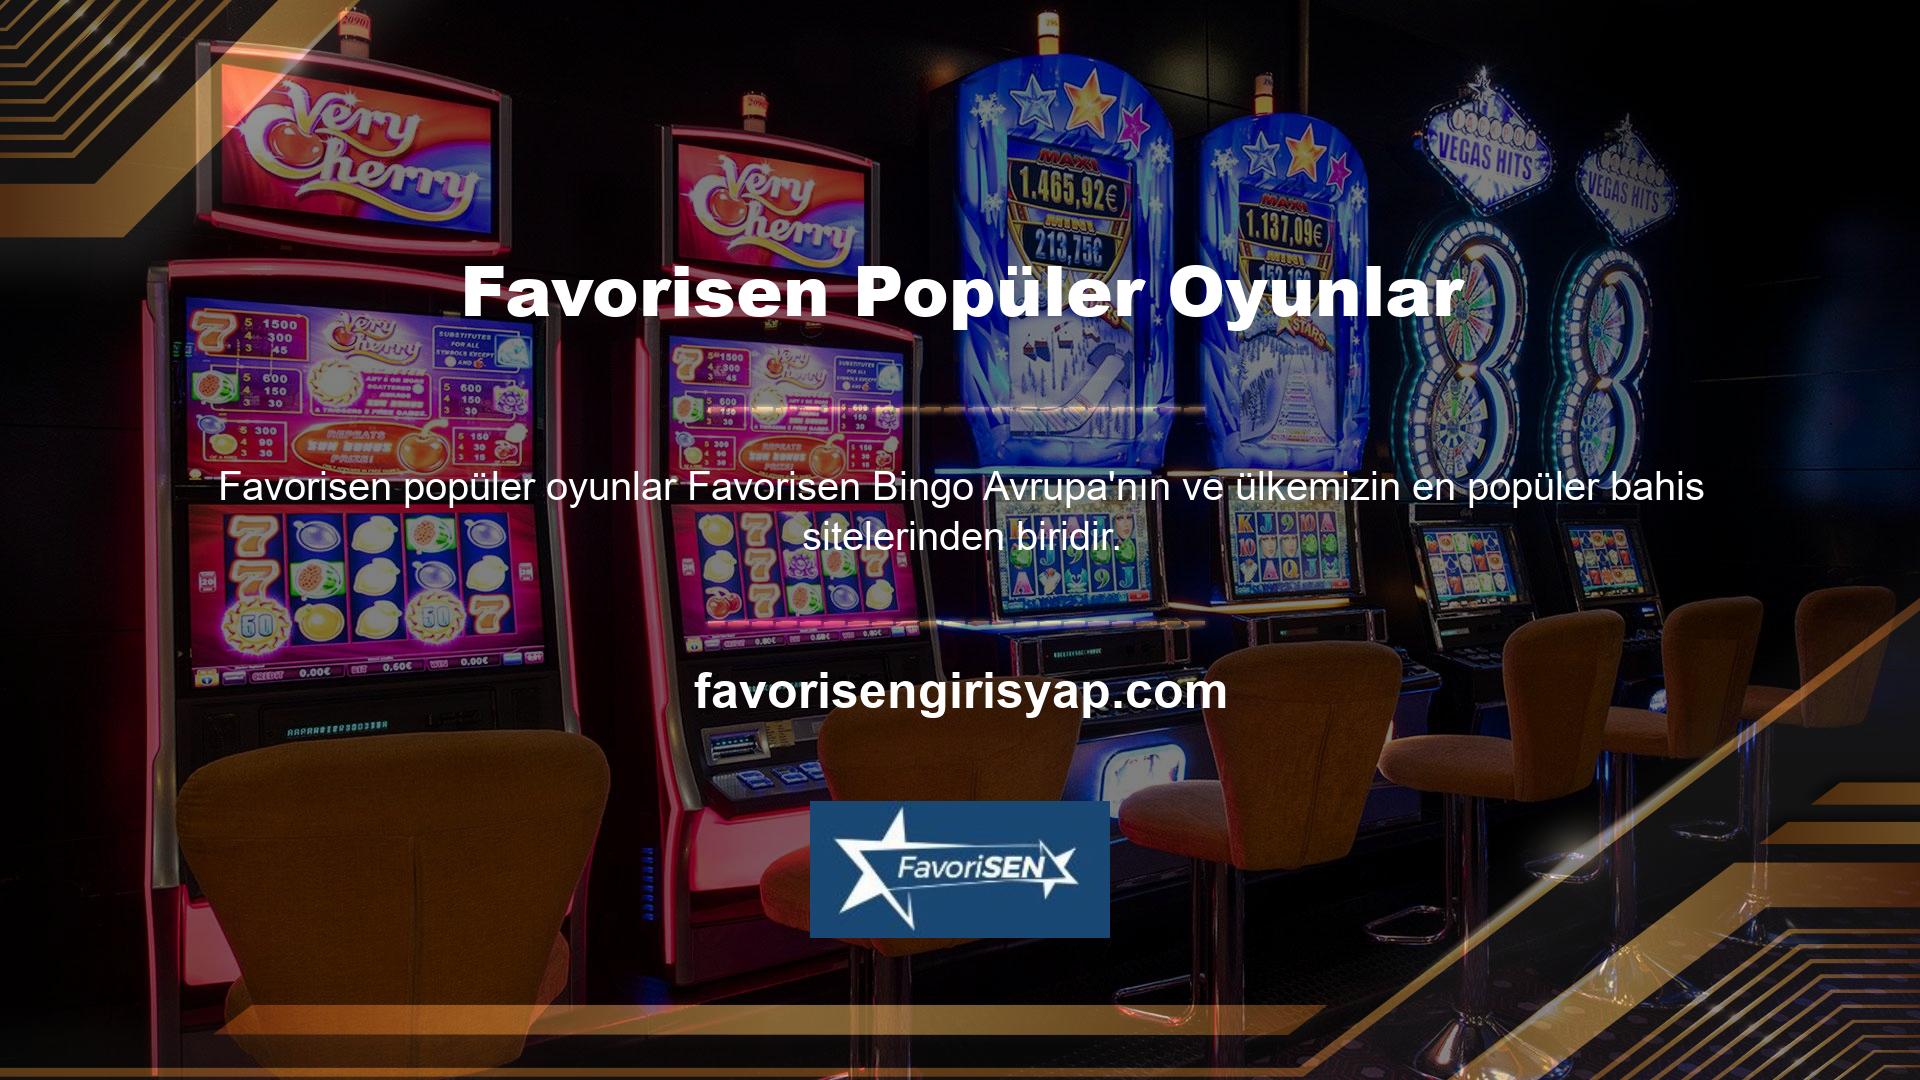 Favorisen, oyuncuların casino oyunlarına olan ilgisinin artması nedeniyle özellikle son yıllarda en popüler bahis sitelerinden biri haline geldi